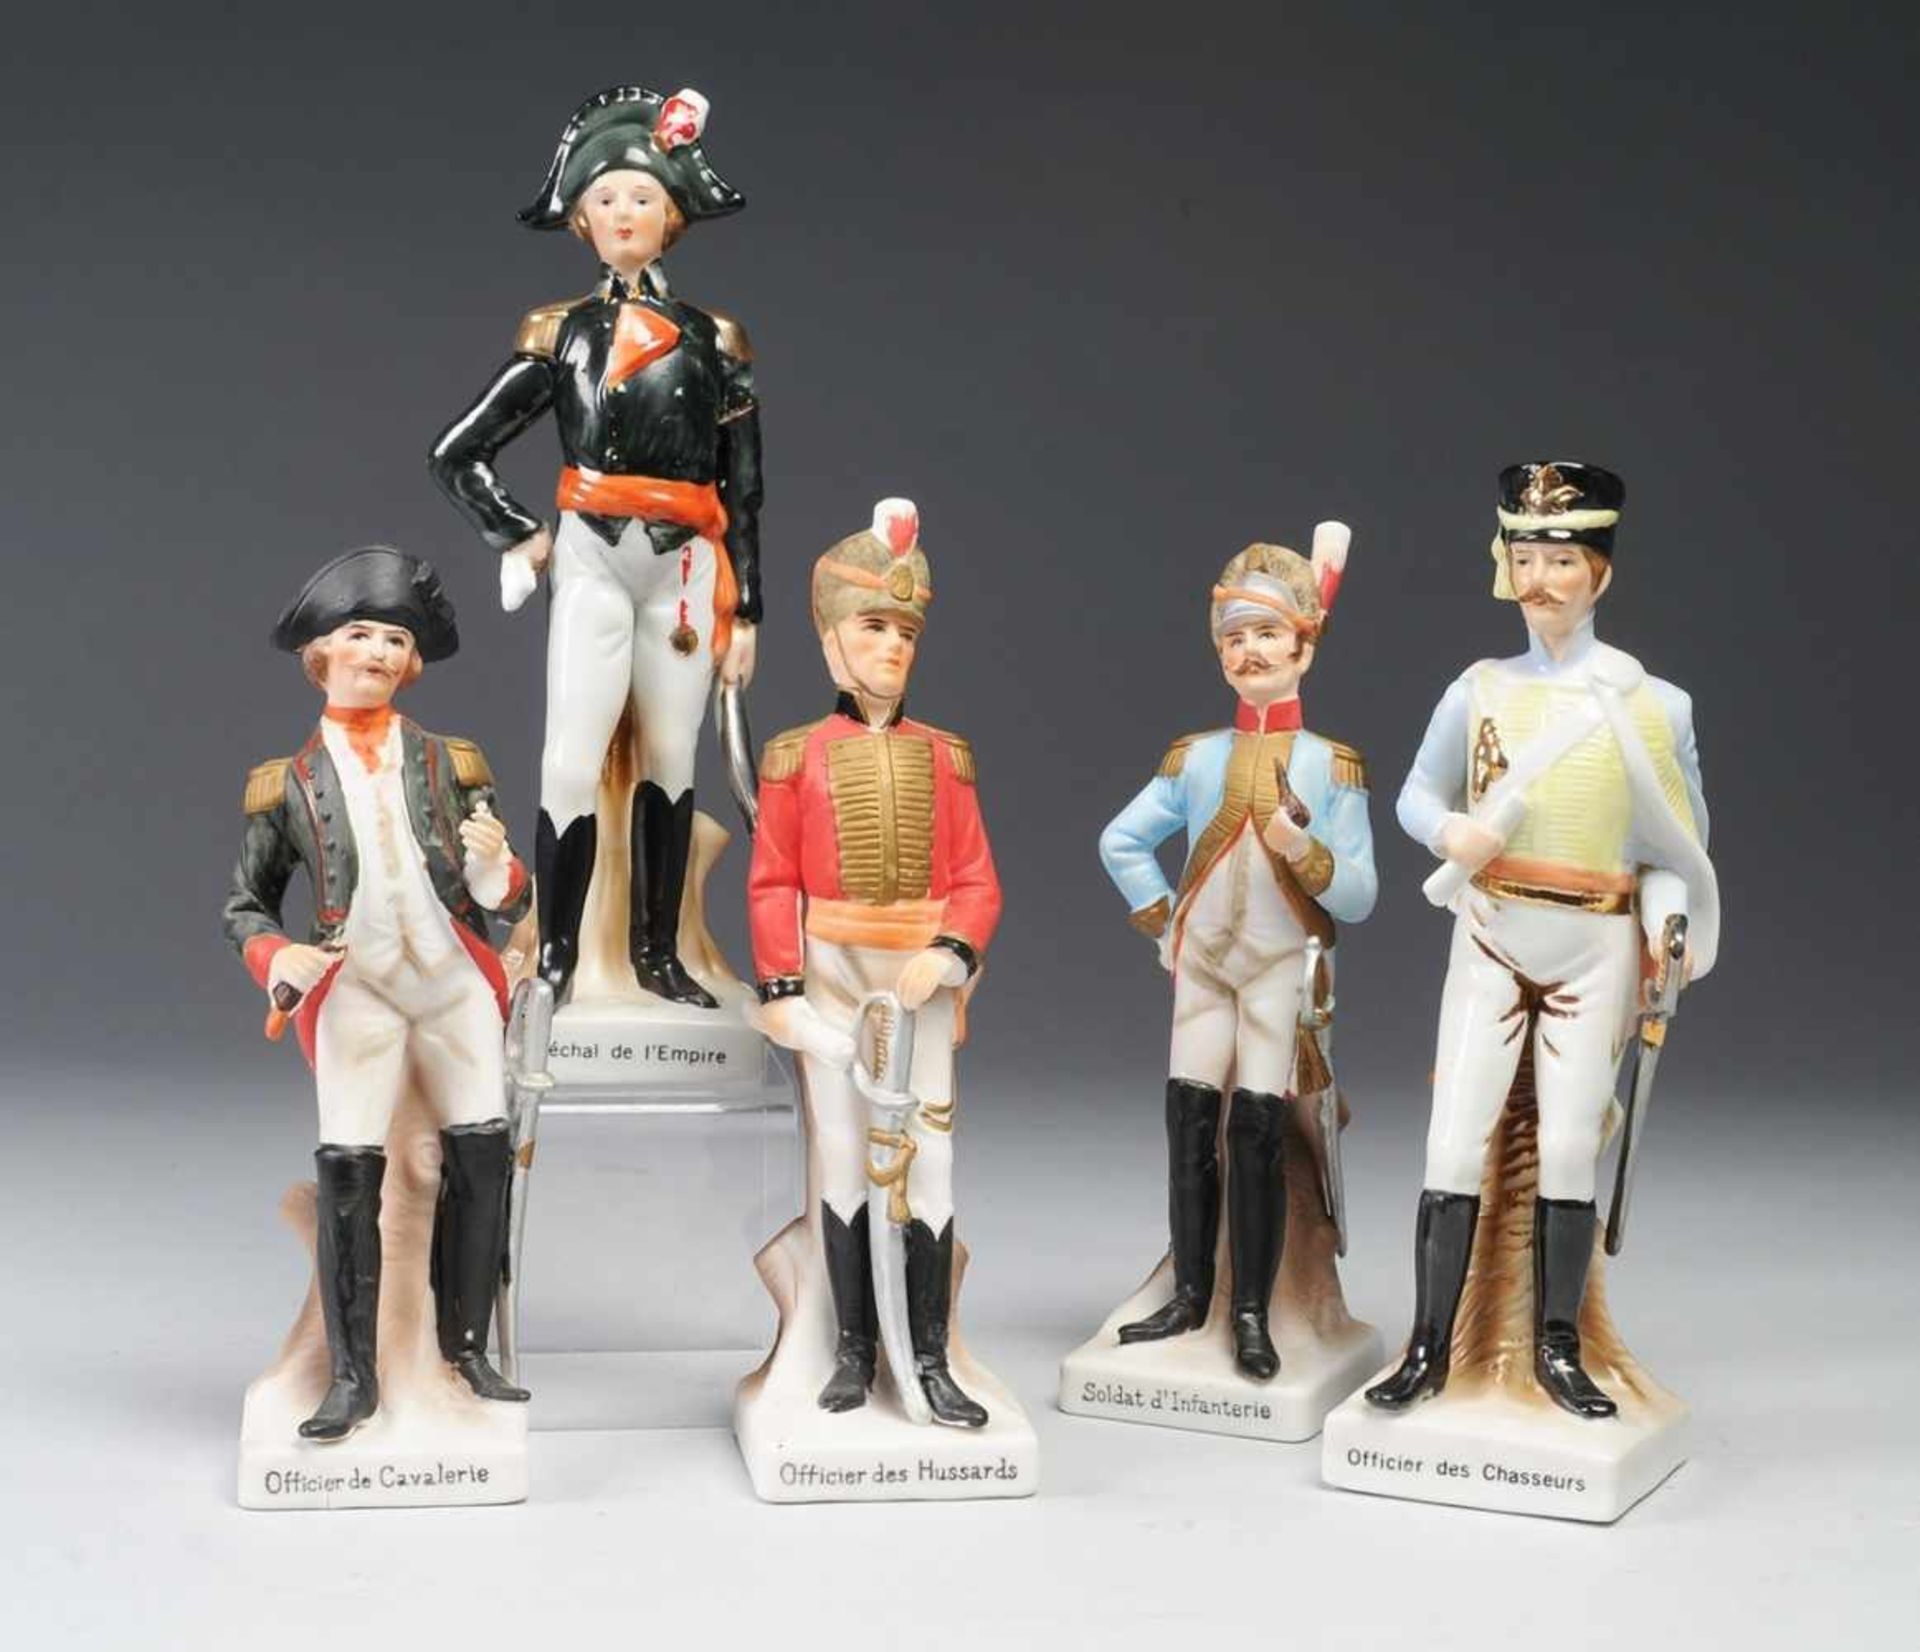 Fünf UniformfigurenBiskuitporzellan/ Porzellan, "Soldat d'Infanterie"/ "Maréchal de l'Empire"/ "